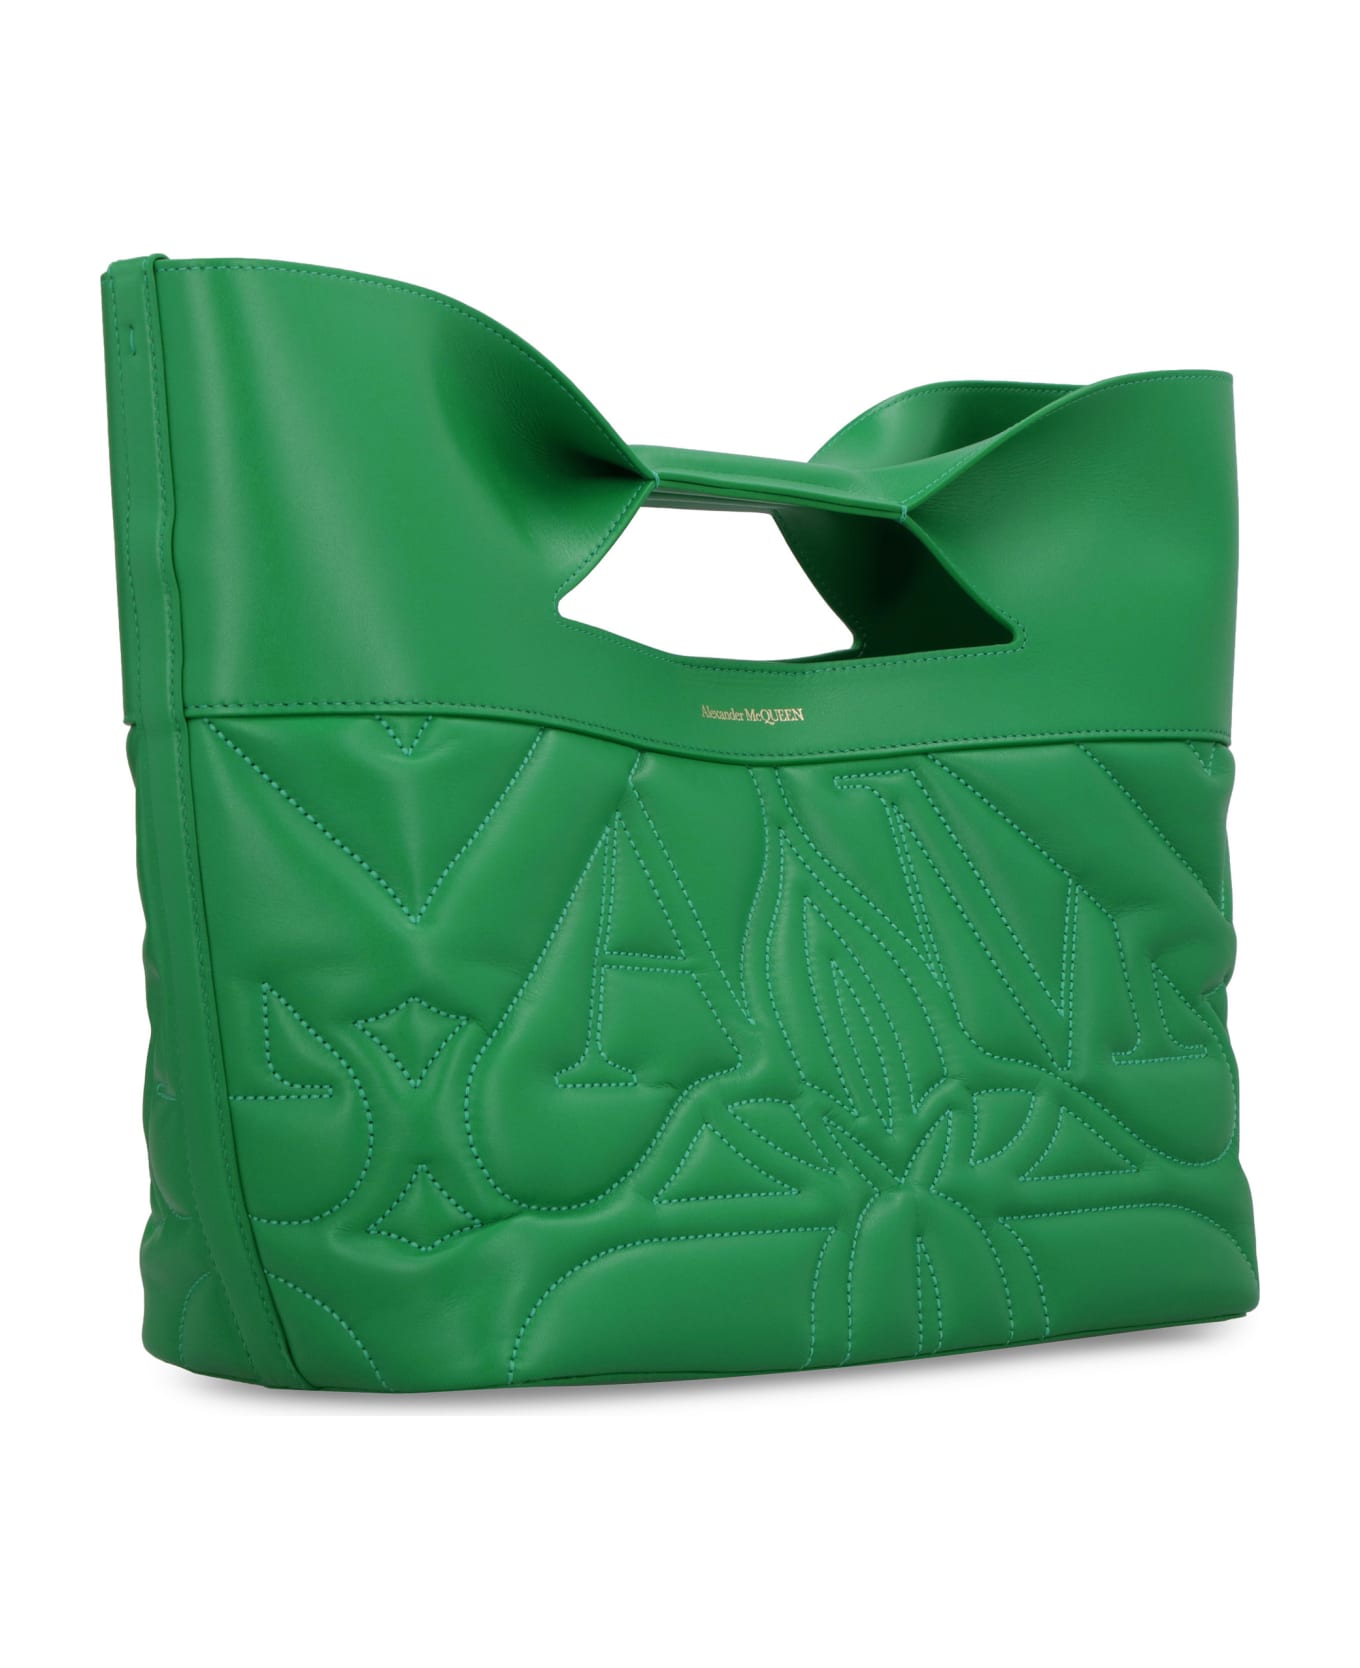 Alexander McQueen The Bow Handbag - green